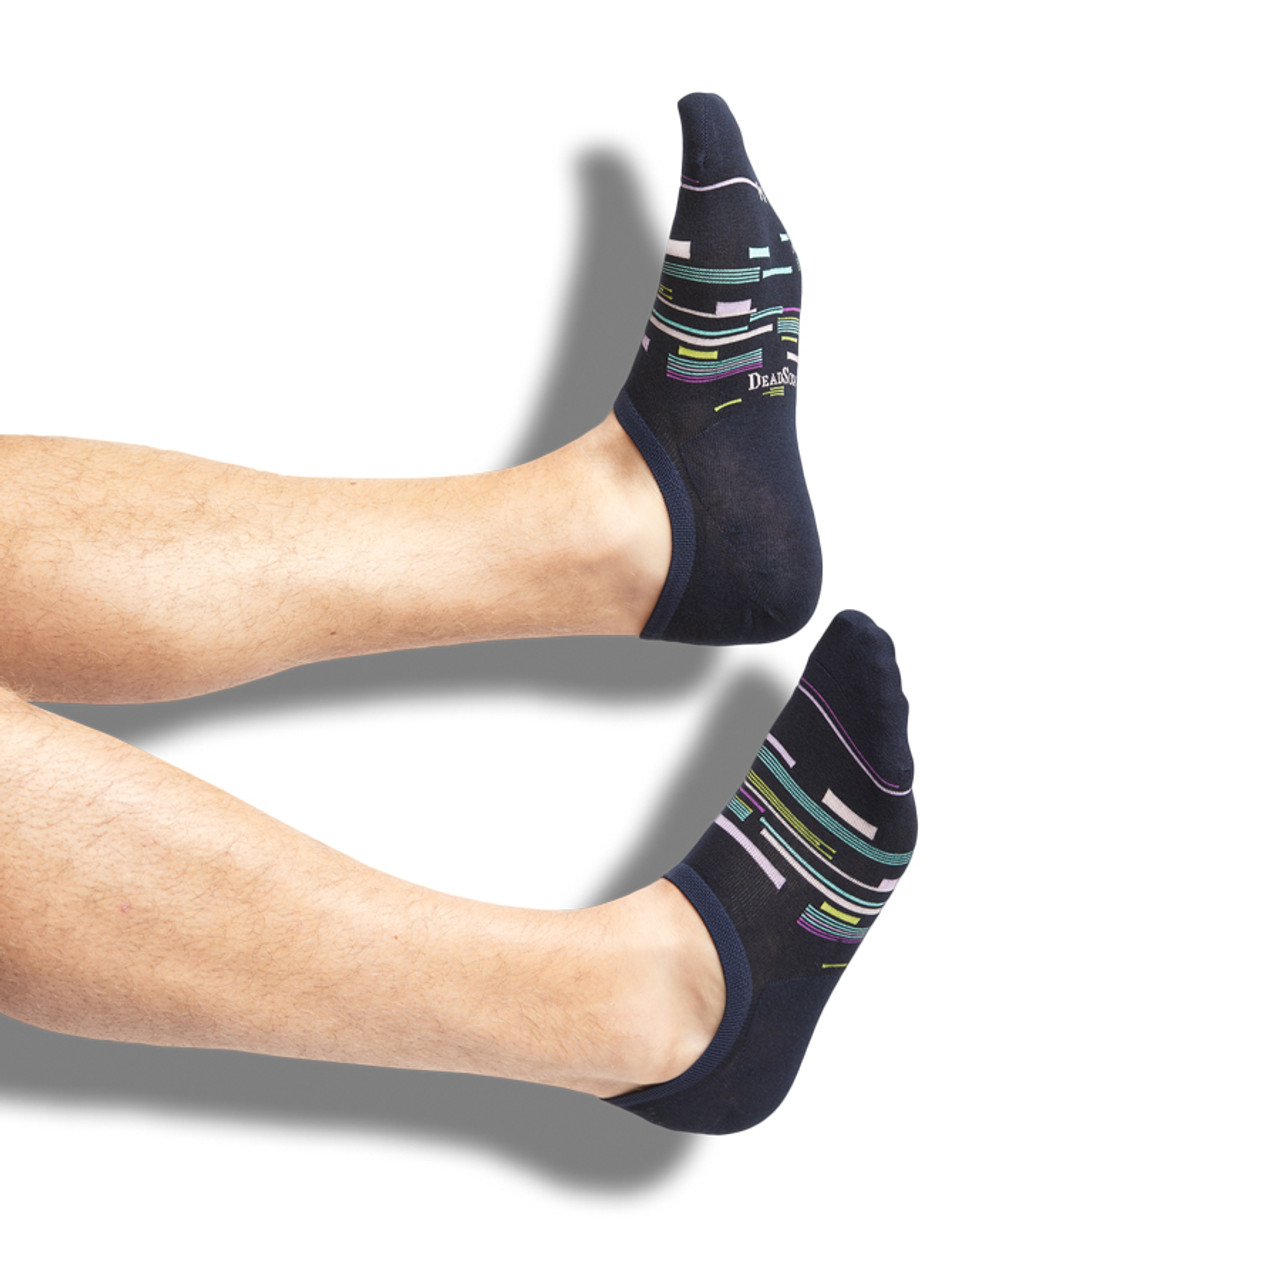 Socks-Men's socks, Loafer socks, shoeliners for men, sport socks